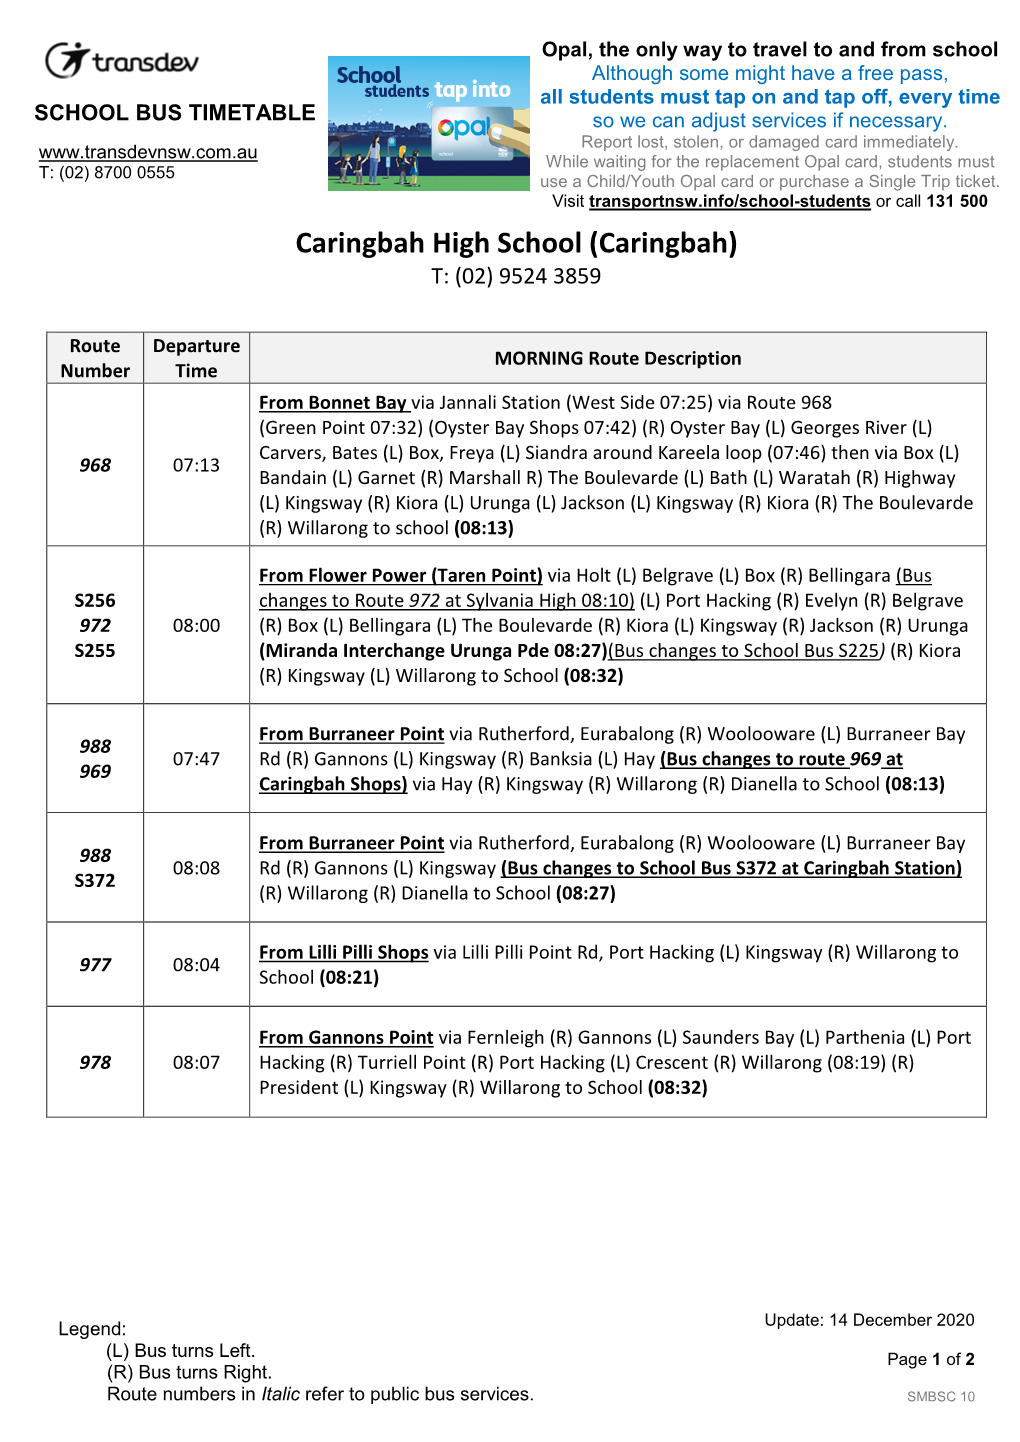 Caringbah High School (Caringbah) T: (02) 9524 3859